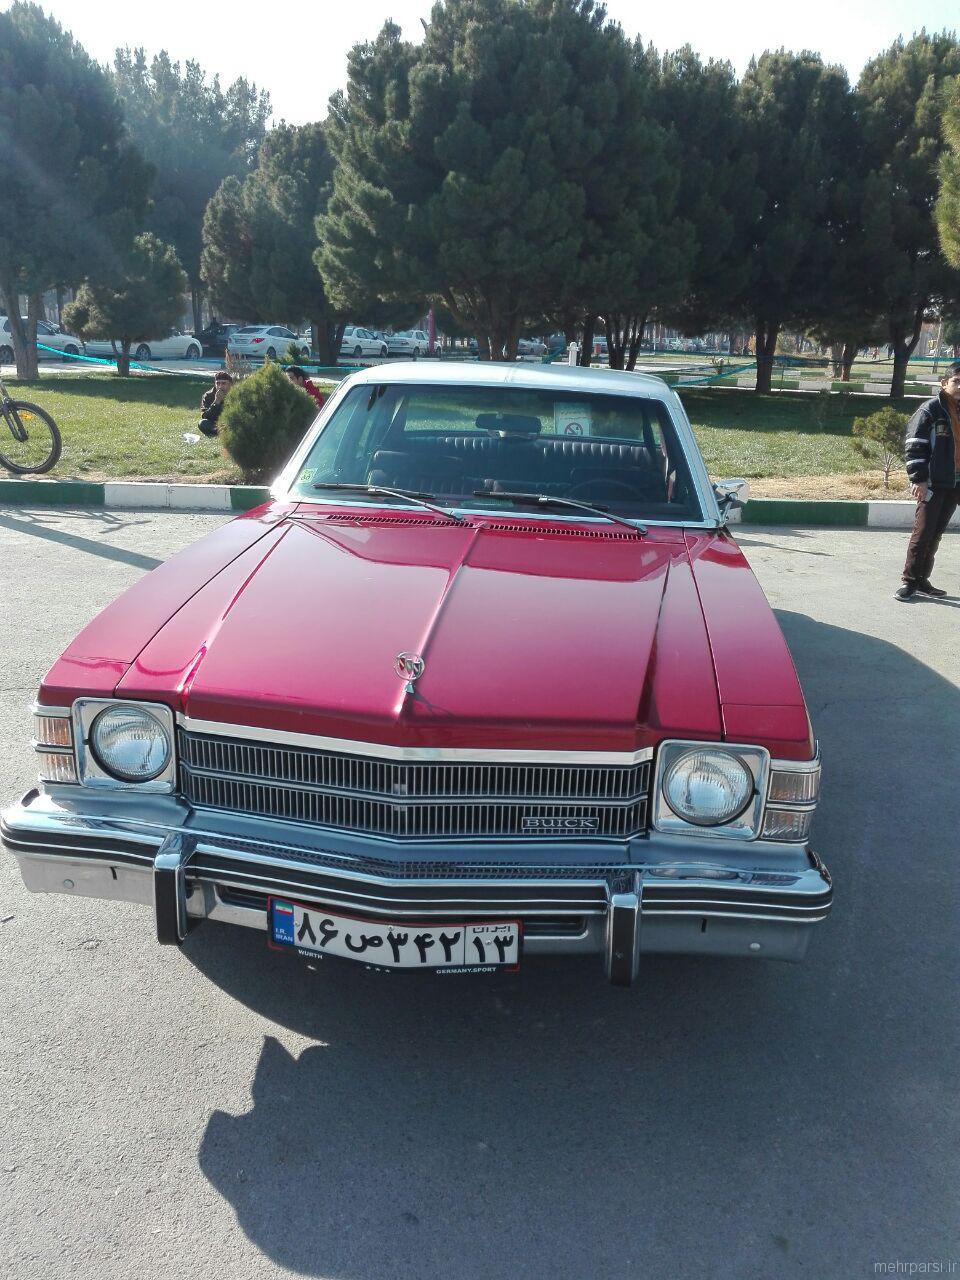 عکسهای نمایشگاه خودرودهای کلاسیک در شاهین شهر اصفهان